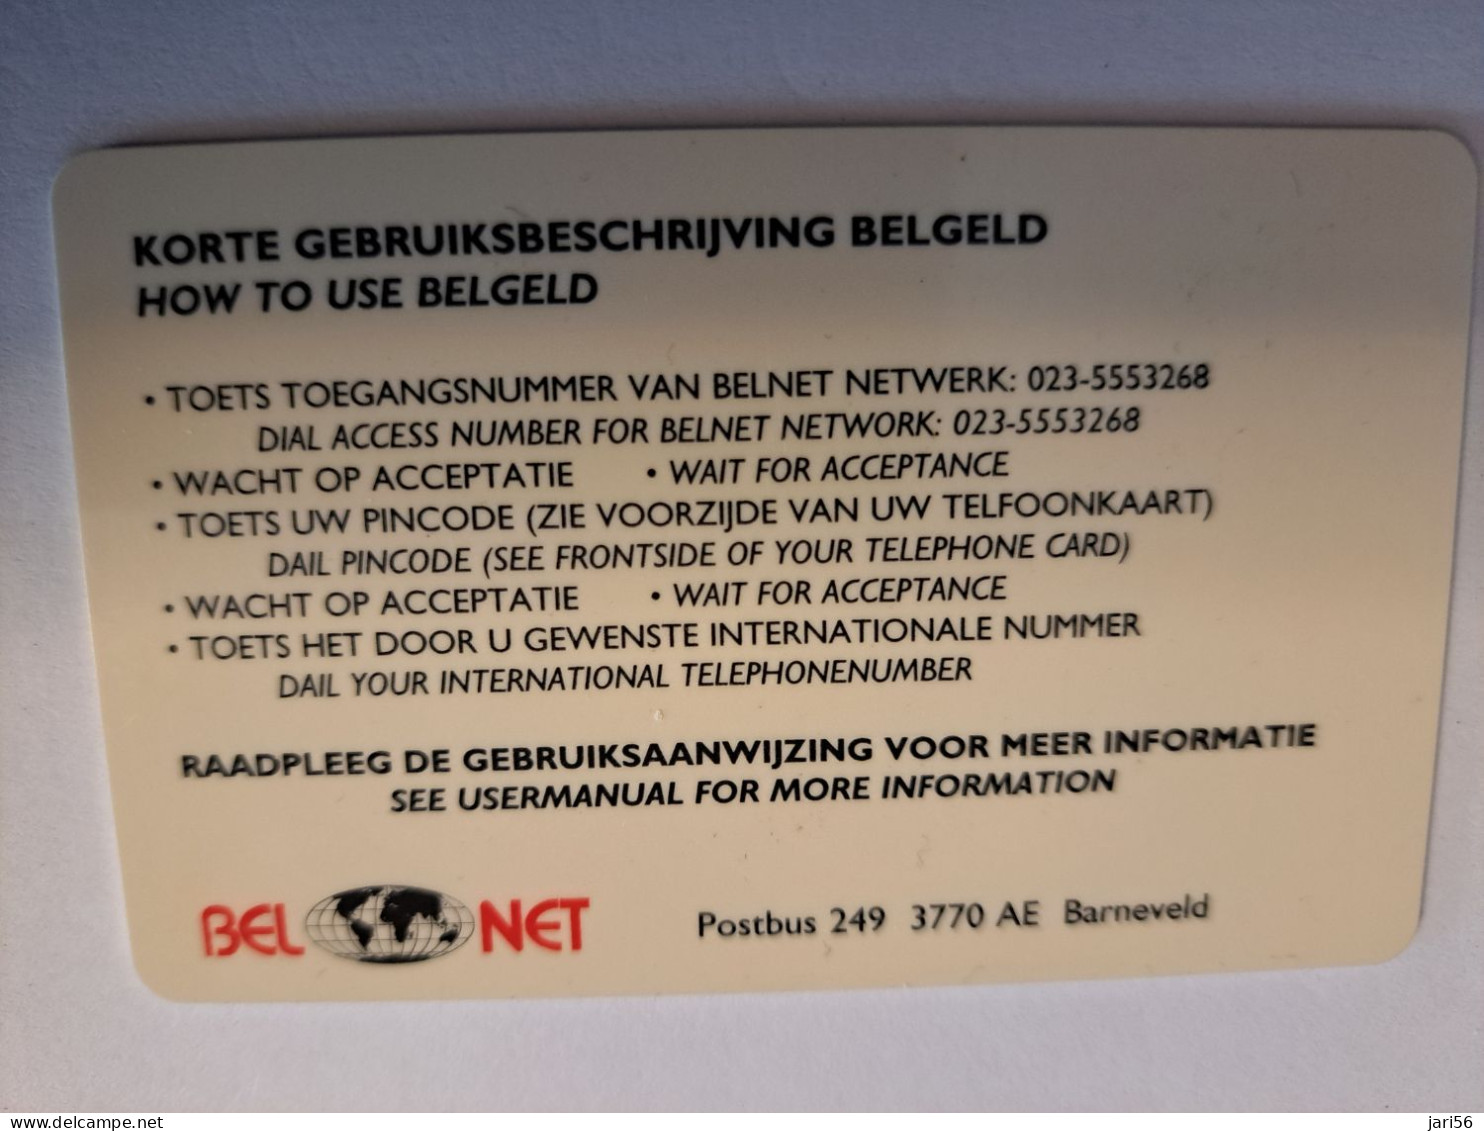 NETHERLANDS  PREPAID / HFL 50,- / INDONESIA / BEL NET/ BELGELD/ THICK CARD  / / OLDER CARD ! / USED  CARD   ** 16219** - [3] Tarjetas Móvil, Prepagadas Y Recargos